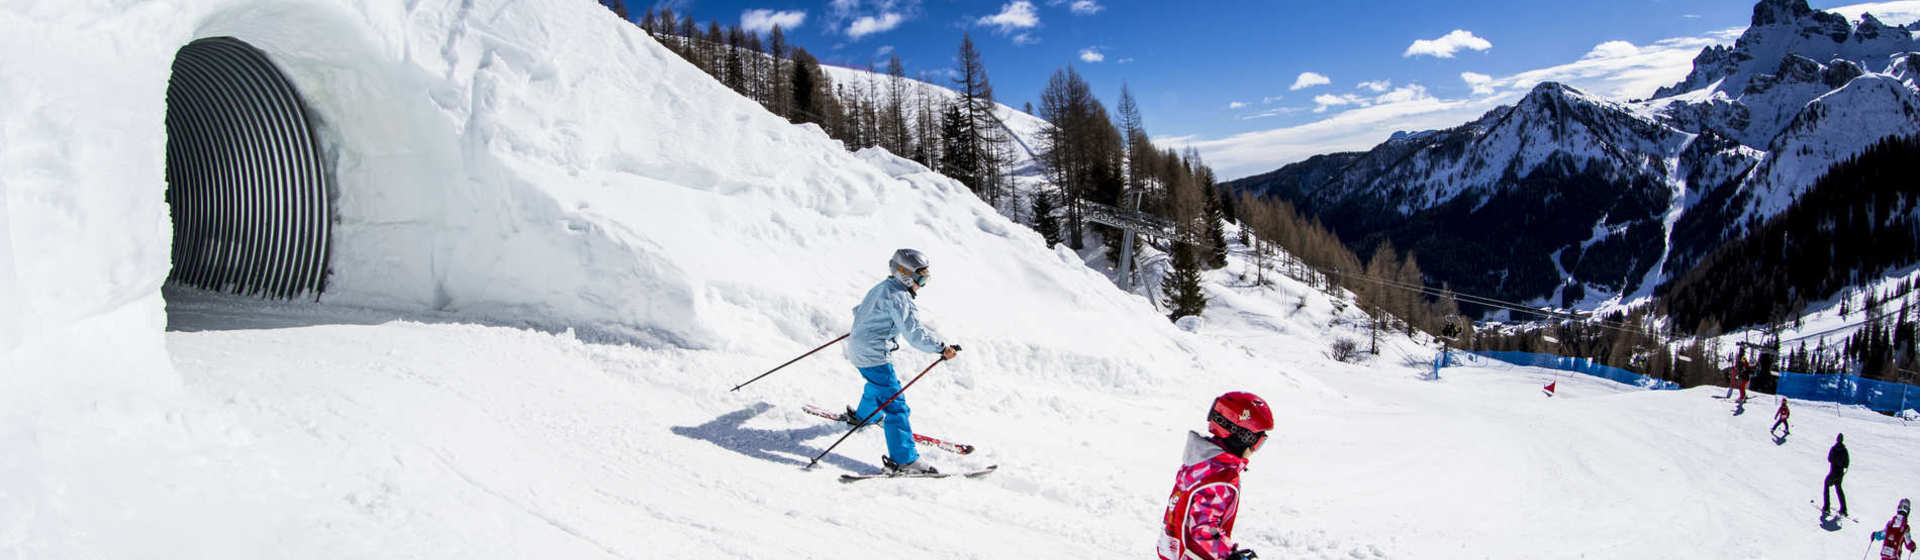 Osterurlaub in Arabba= Frühlingsskilaufen bei TOP Schneeverhältnissen!